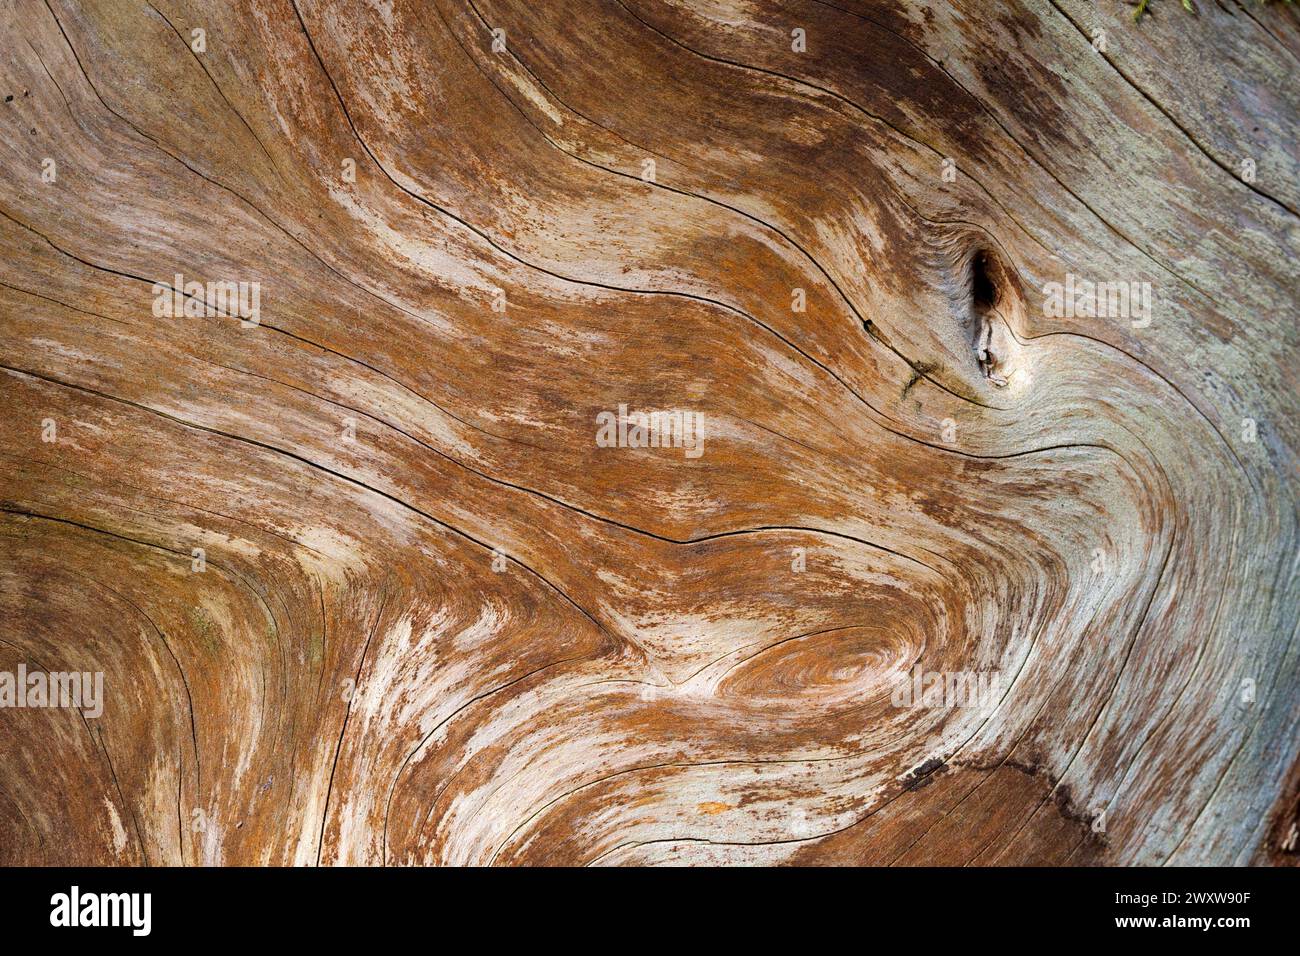 La venatura di legno di un tronco d'albero assomiglia ad un liquido che scorre, le sue linee e forme creano un'illusione di movimento fluente del legno. Foto Stock